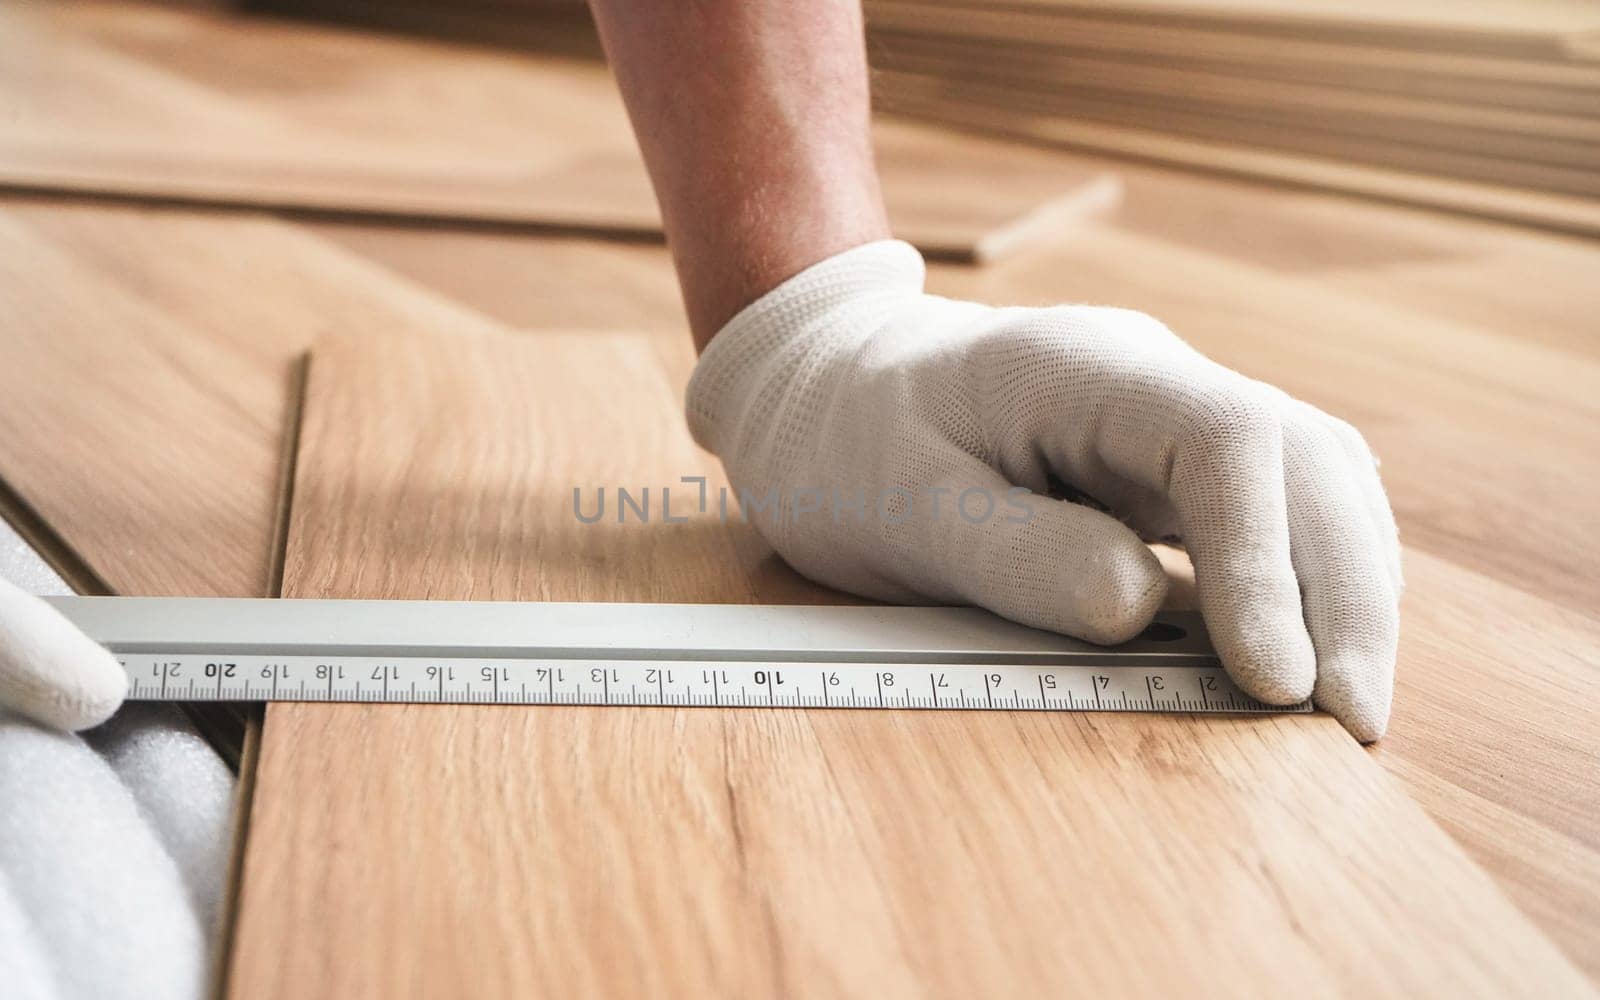 Installing laminated floor, detail on man hands in white gloves holding aluminium ruler over wooden tile